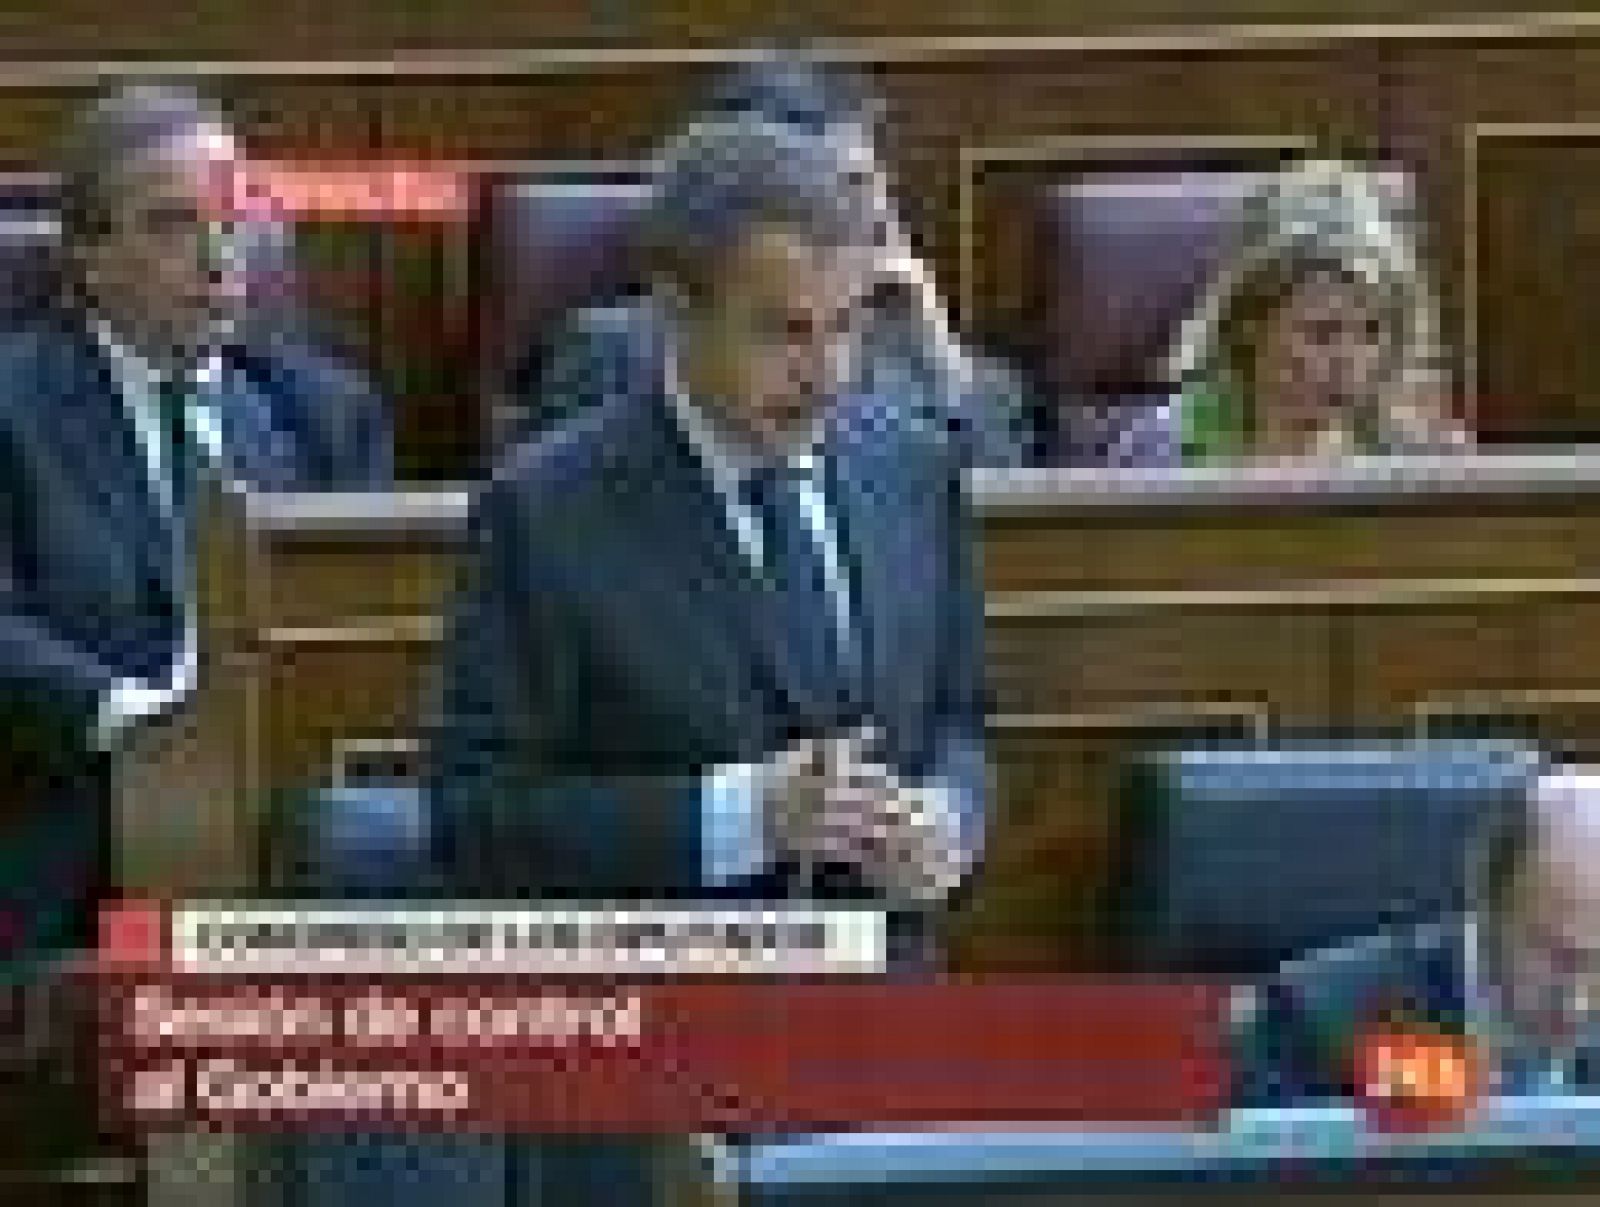 El presidente del Gobierno, José Luis Rodríguez Zapatero, ha señalado que el dato del paro del mes de abril, que marca una reducción de 64.309 desempleados, es un "buen dato" puede abrir una nueva tendencia de cara a la segunda mitad del año que, a su juicio, puede ser más favorable para la creación de empleo. Ha hecho estas declaraciones en la sesión de control del Congreso de los Diputados en la que el líder de la oposición, Mariano Rajoy, se ha centrado en las últimas cifras de la EPA que sitúan el desempleo en torno a los cinco millones de parados.
